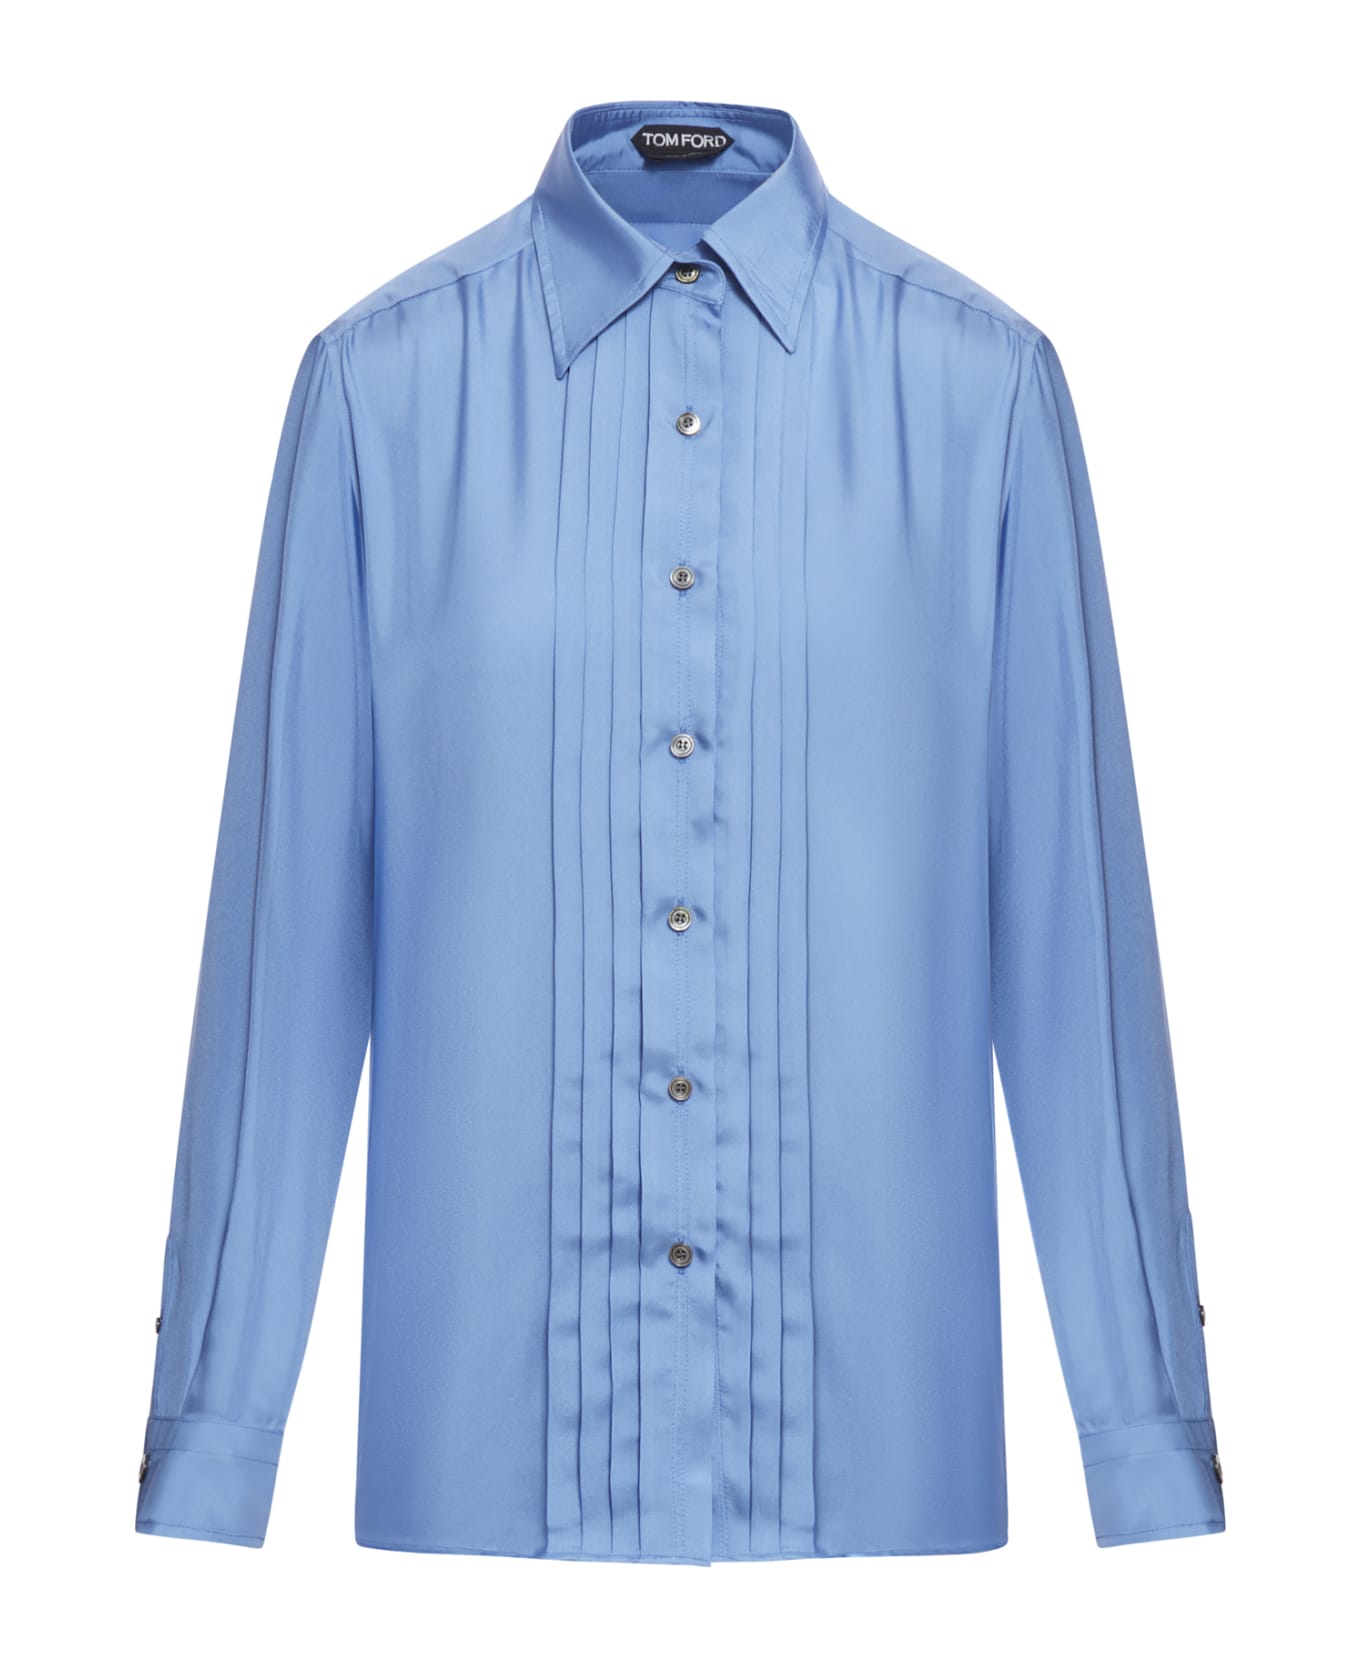 Tom Ford Fluid Viscose Silk Twill Shirt - Stone Blue シャツ